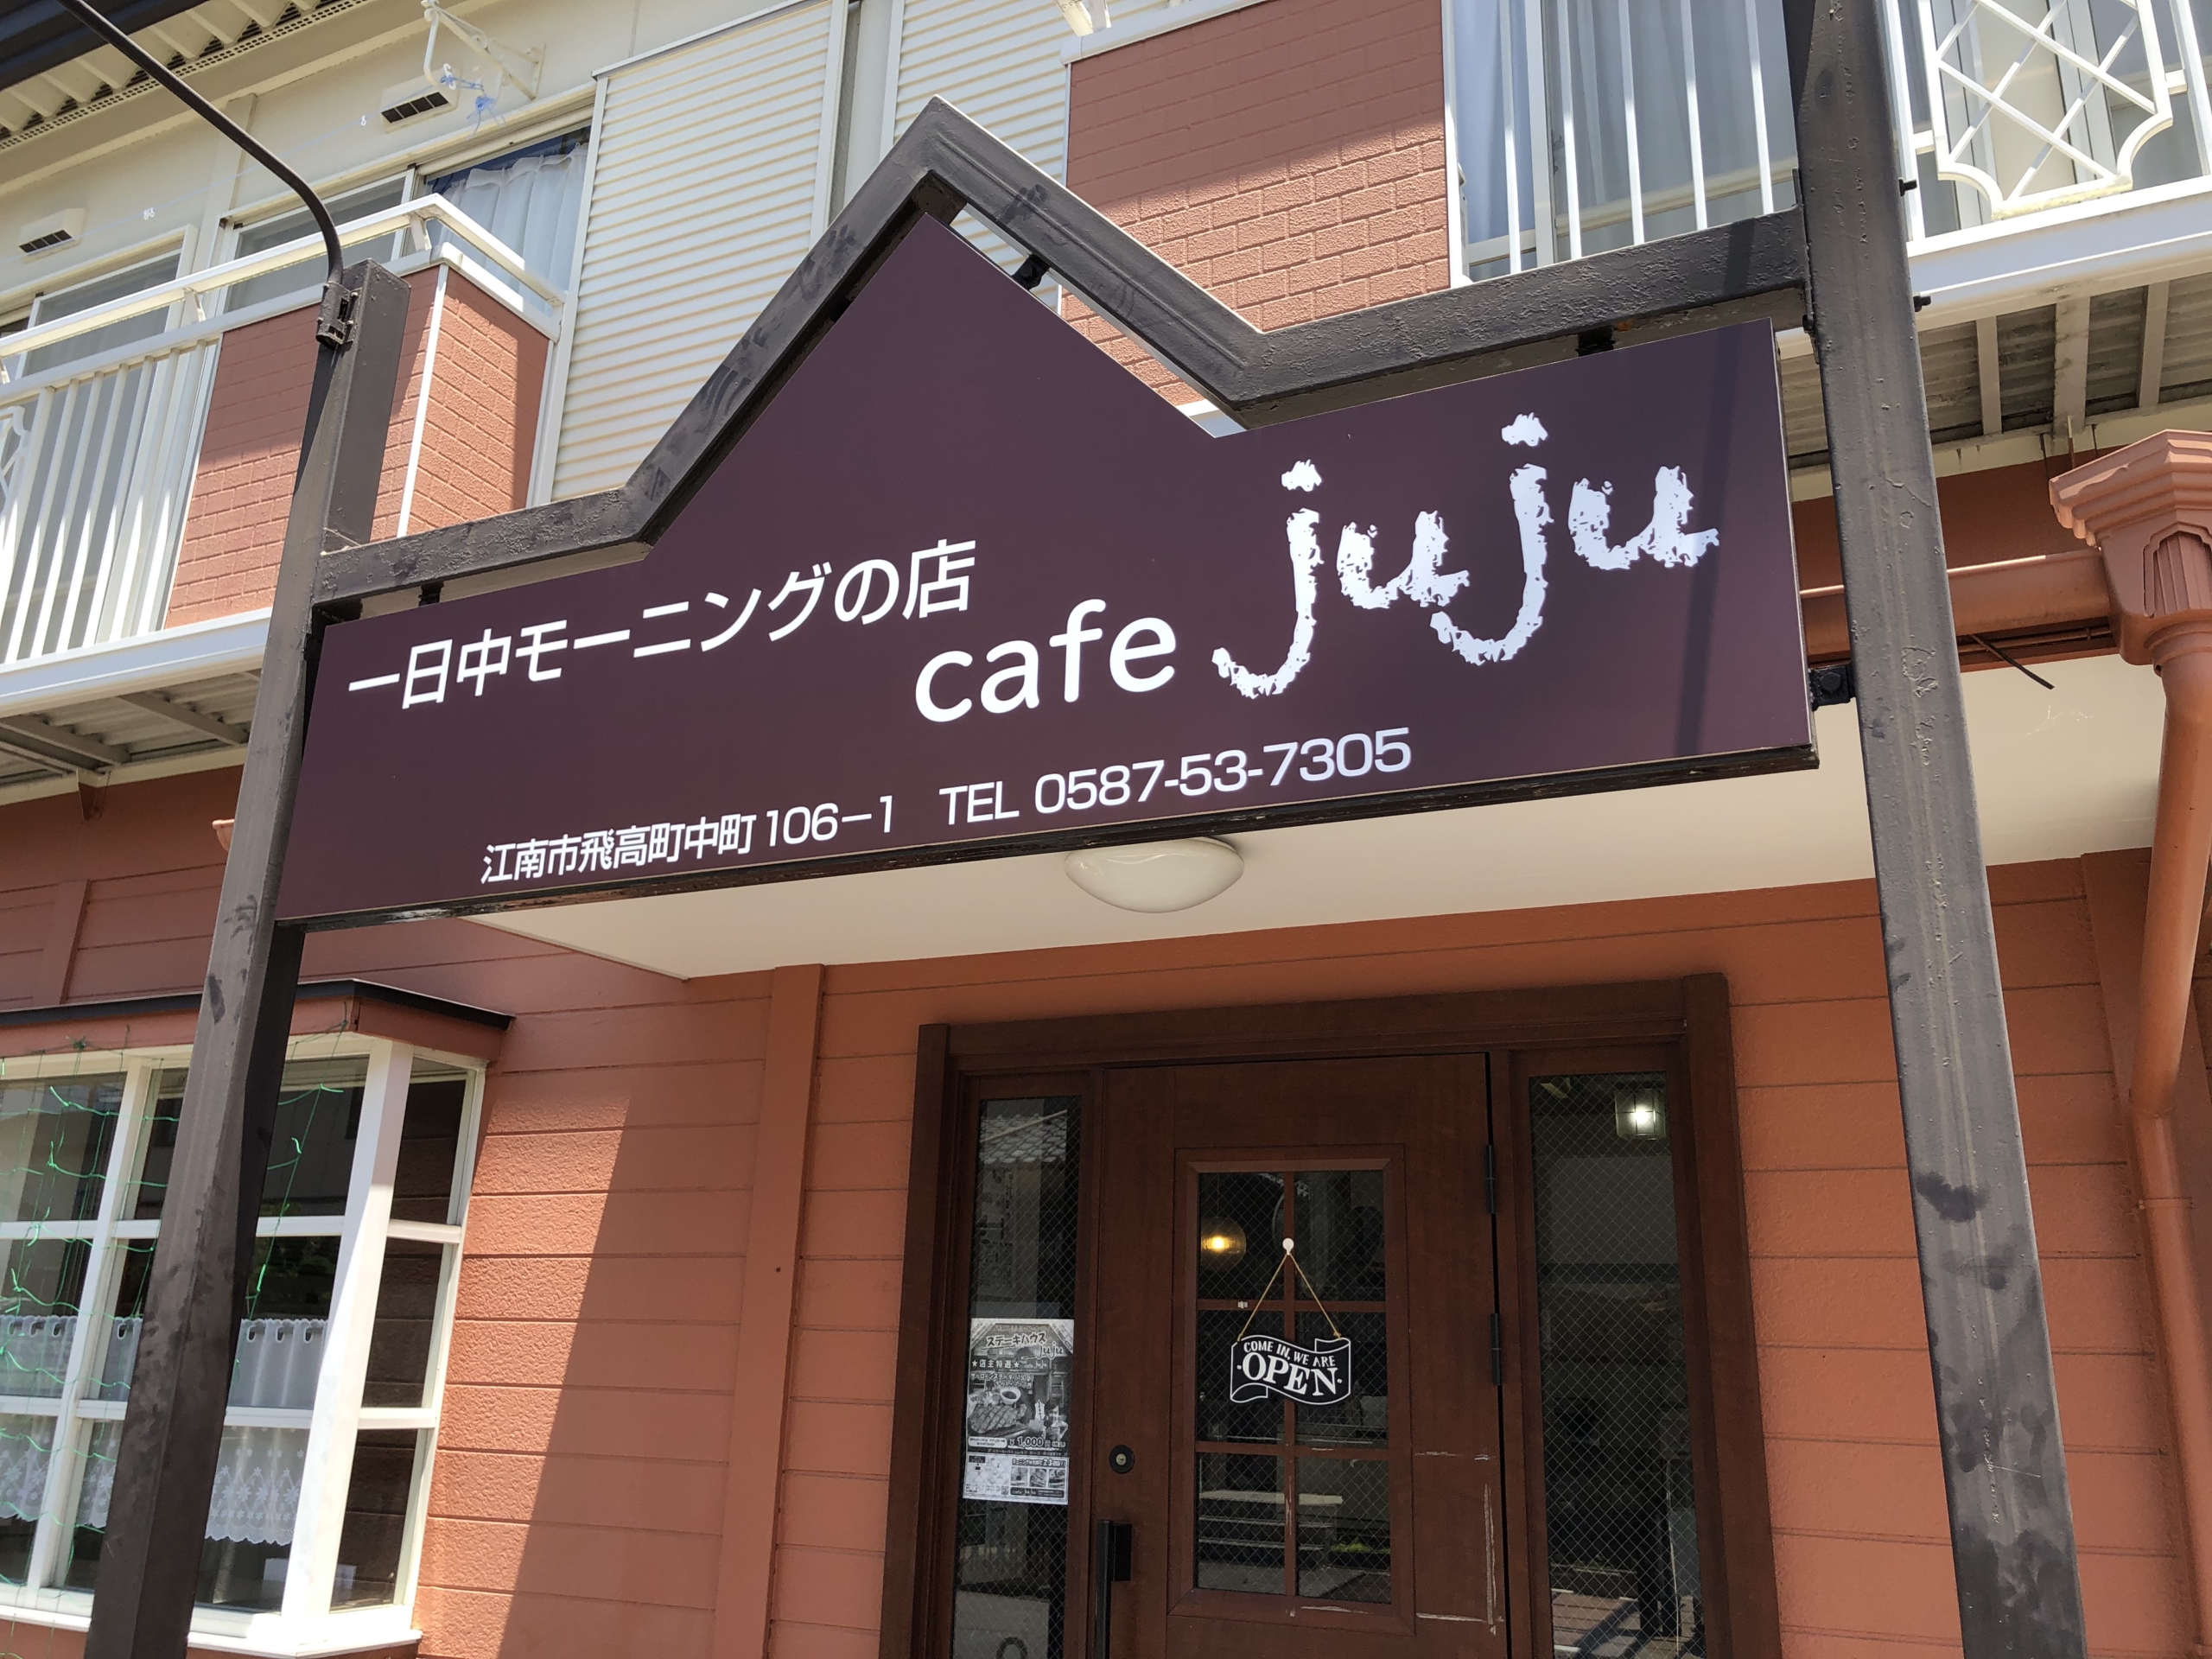 Cafe Juju カフェ ジュジュ ステーキハウス Juju で ステーキ御膳のランチ 江南しえなん 江南市の地域情報サイト